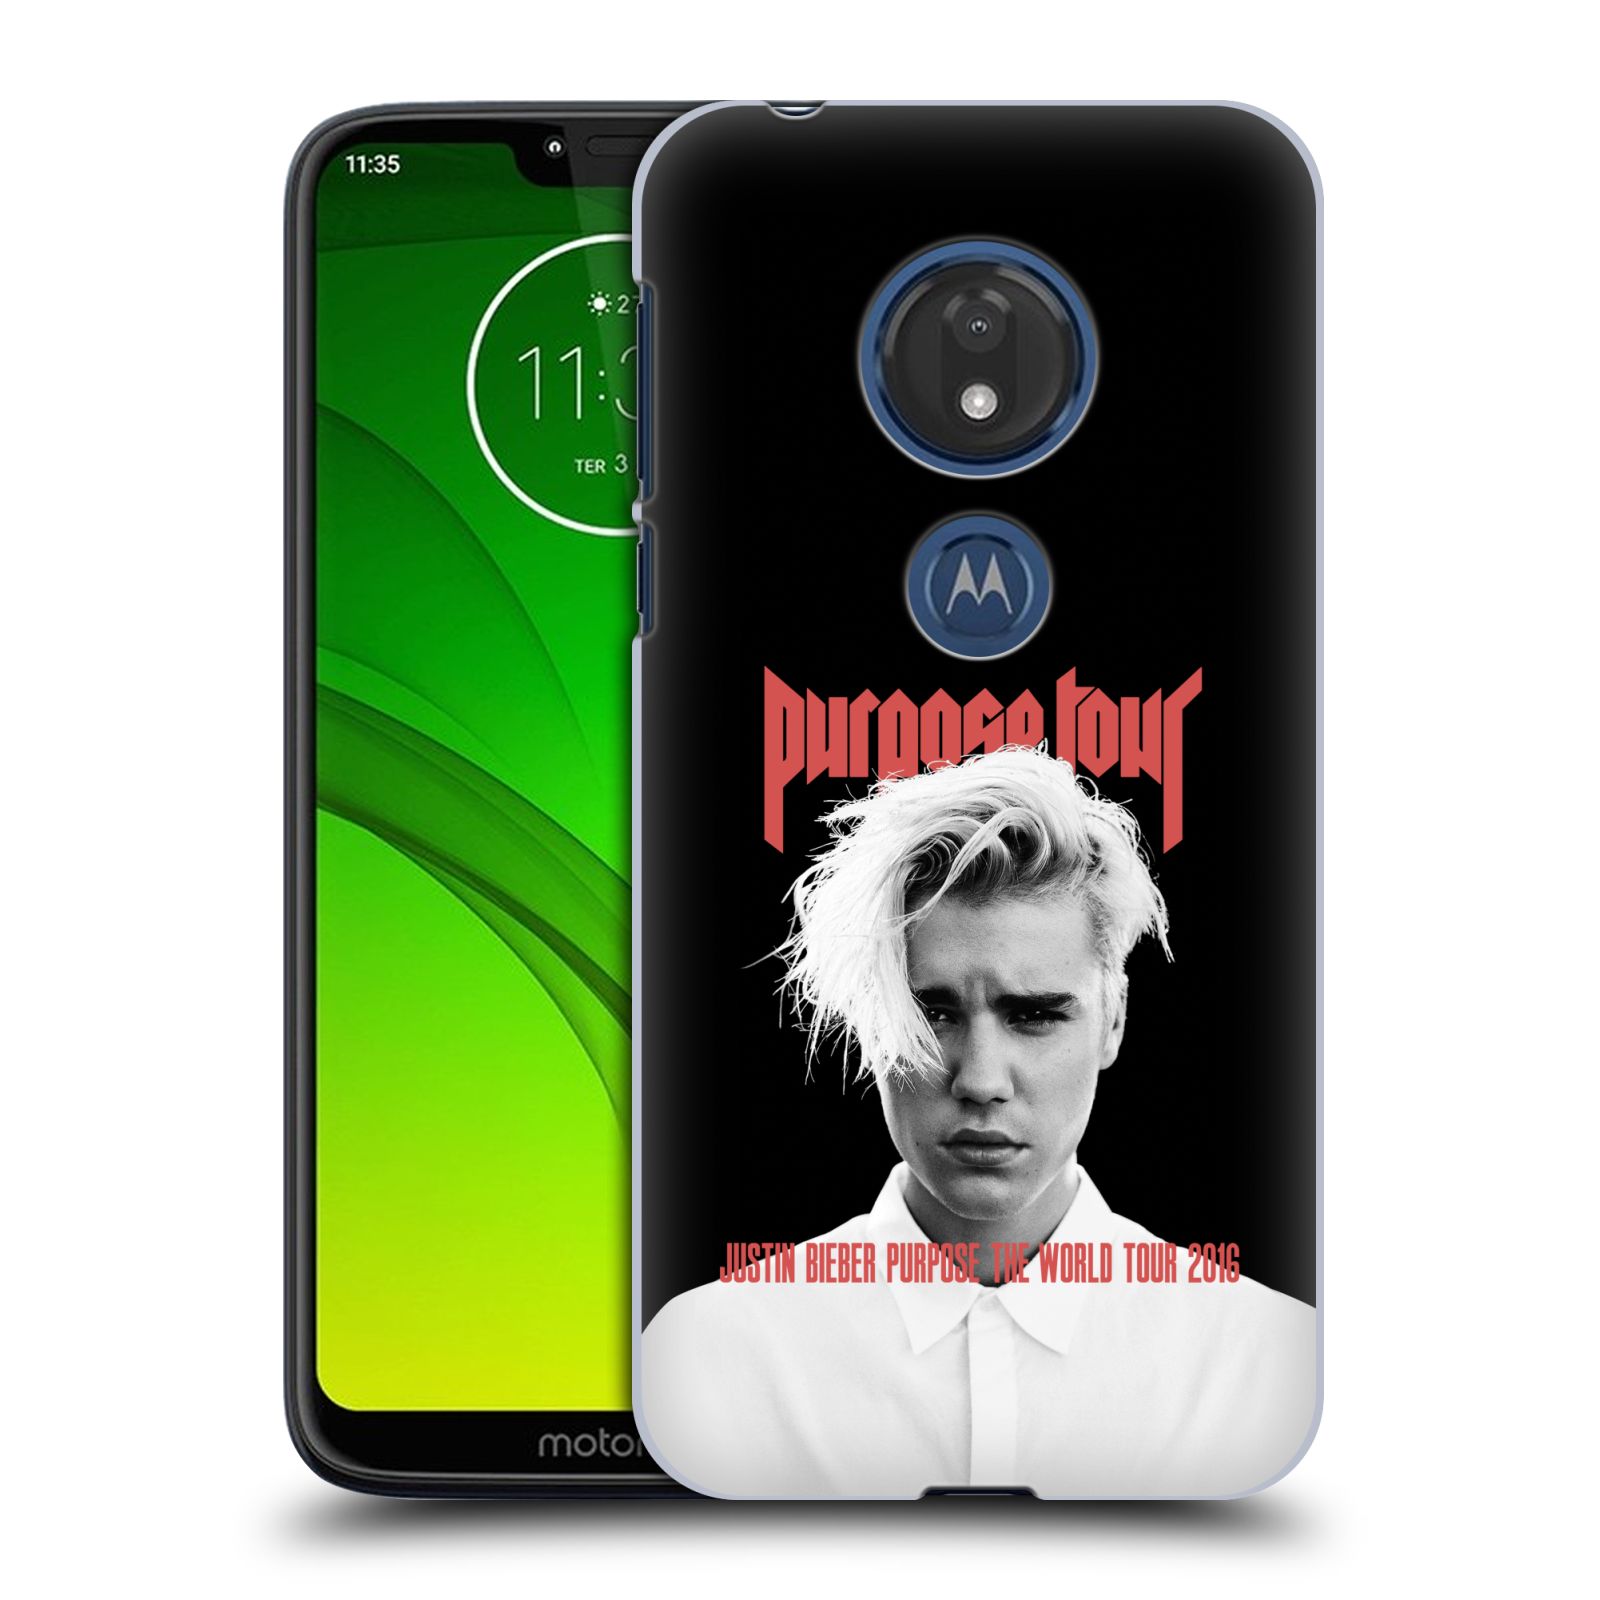 Pouzdro na mobil Motorola Moto G7 Play Justin Bieber foto Purpose tour černé pozadí